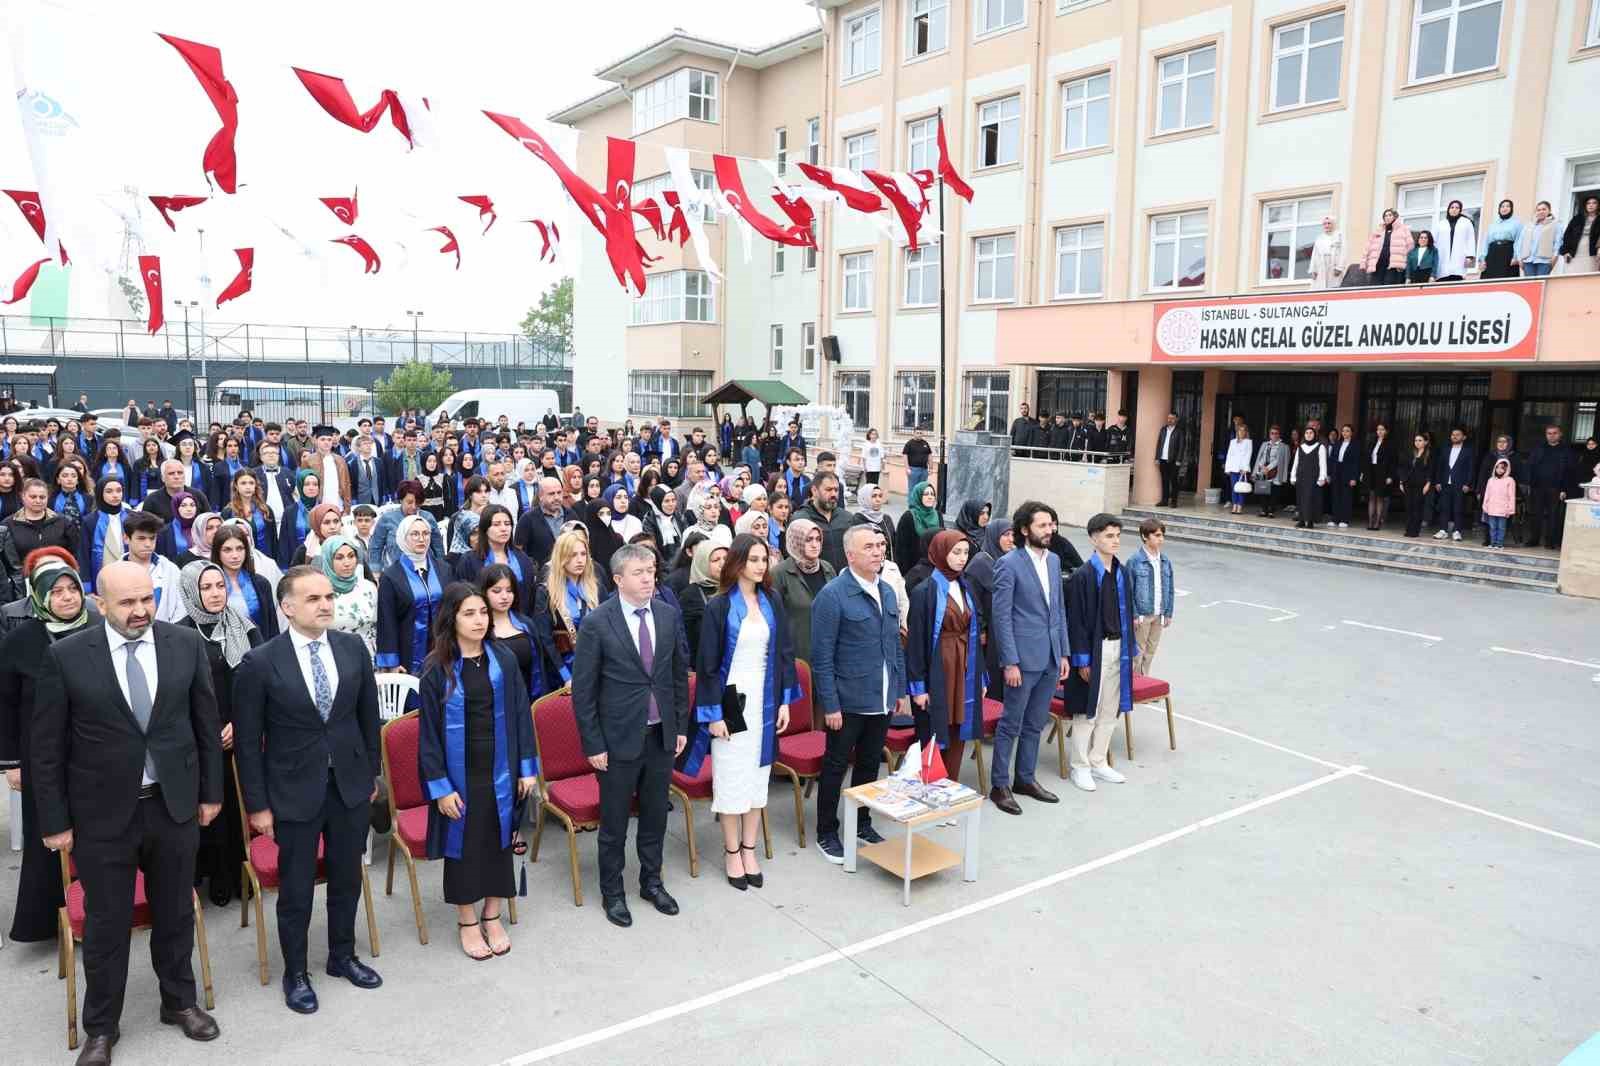 sultangazi belediyesi genclerin mezuniyet mutluluguna ortak oluyor 0 wiCnQC6w